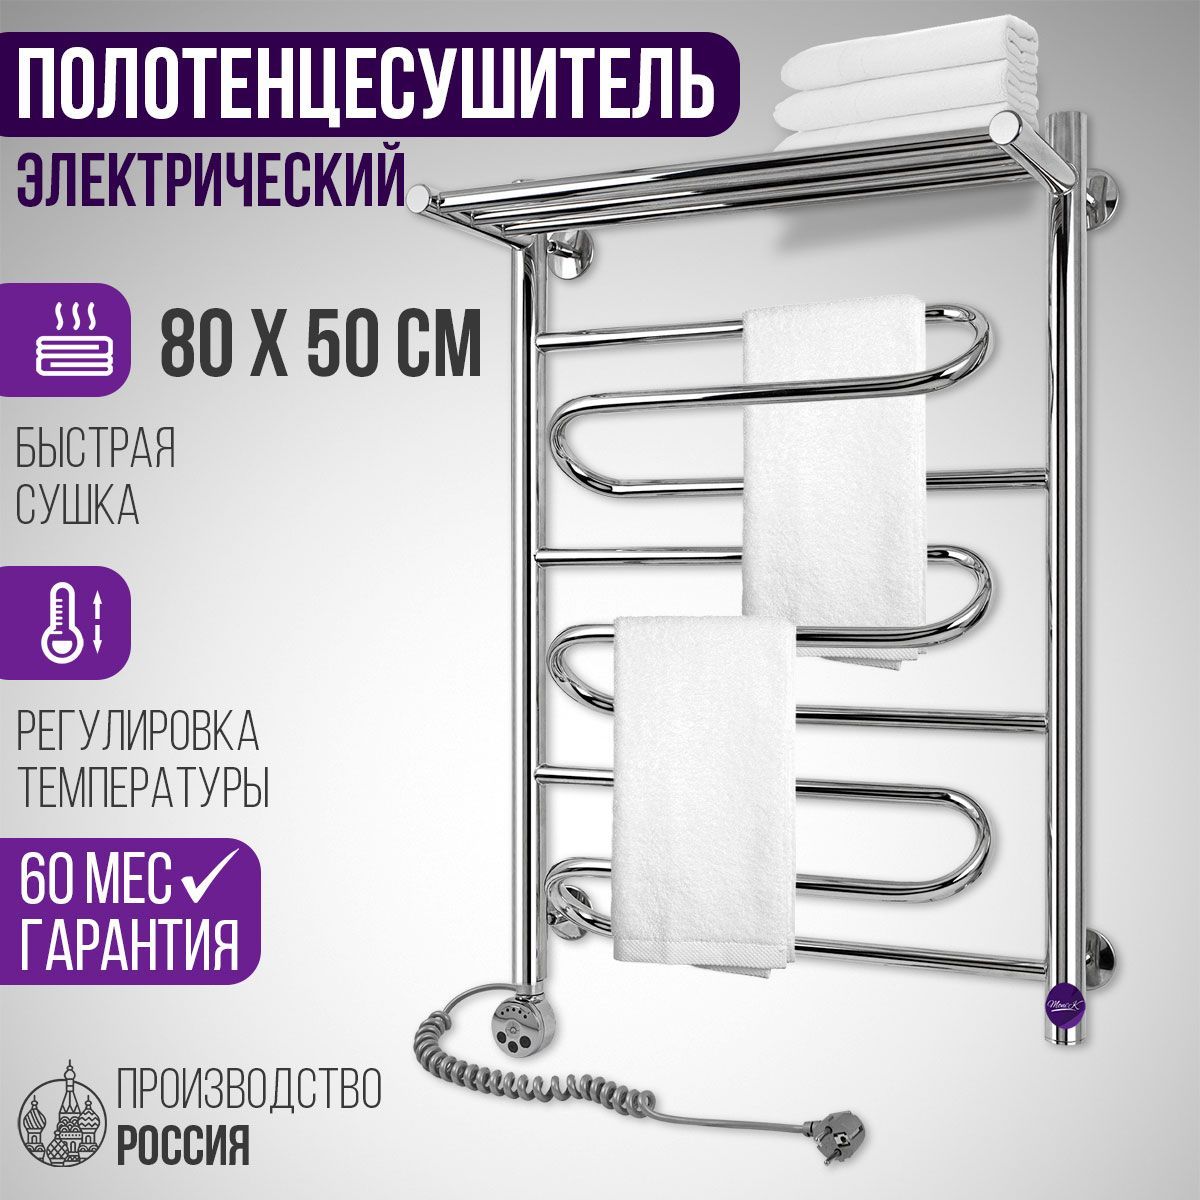 Полотенцесушитель из нержавейки EF standart 9L от Украинского производителя